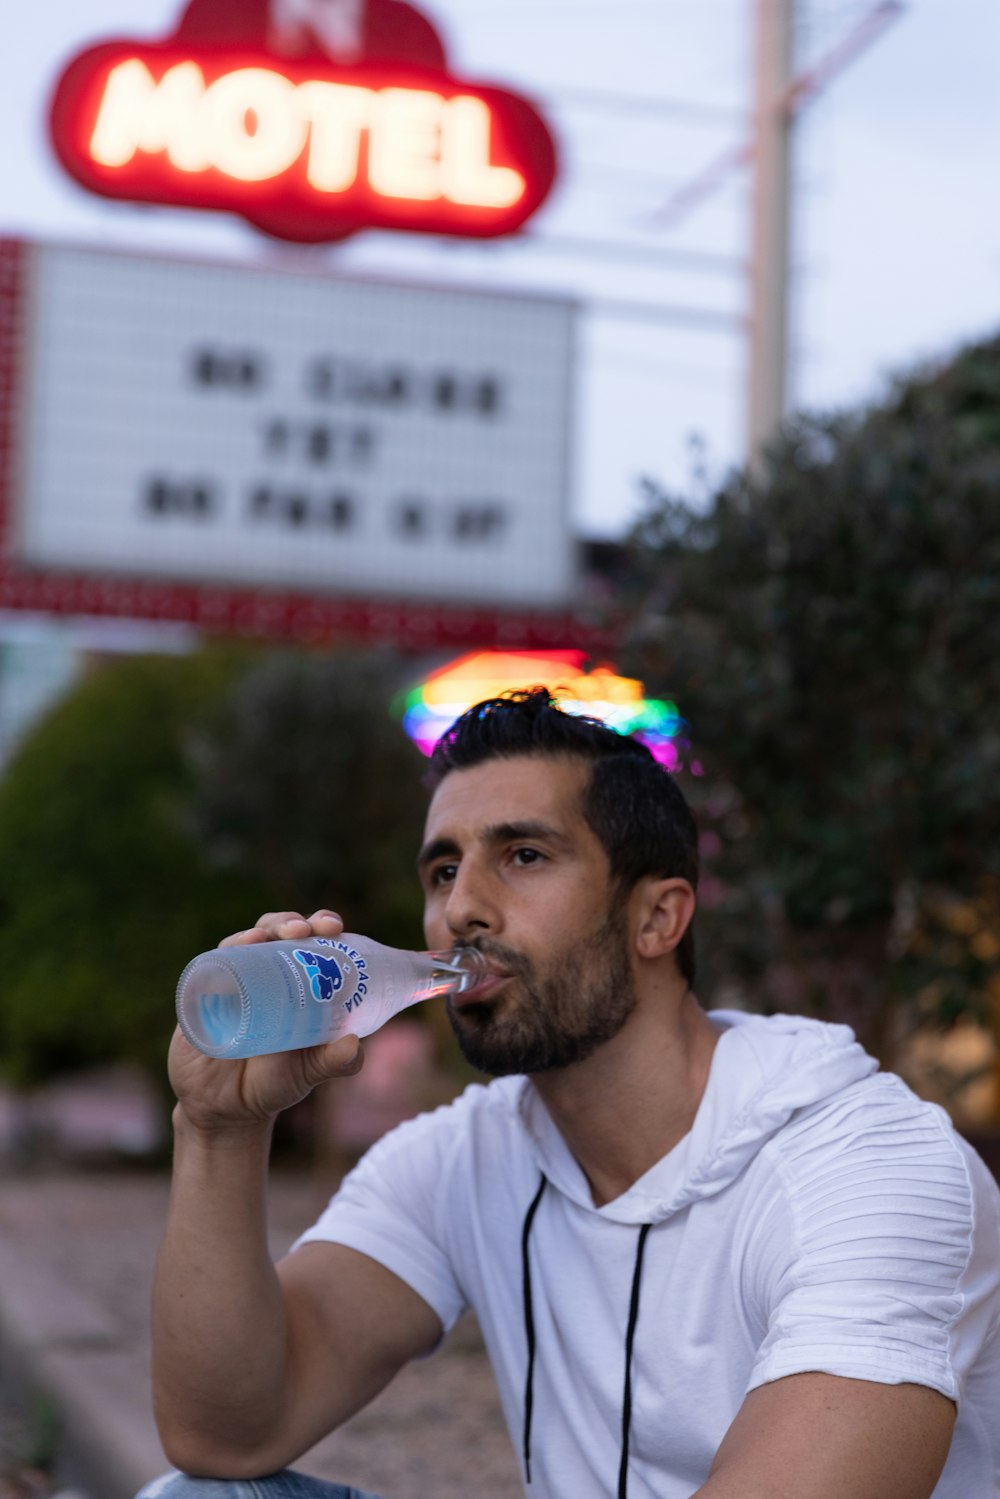 흰색 크루넥 티셔츠를 입은 남자는 파란색 플라스틱 병에서 물을 마신다